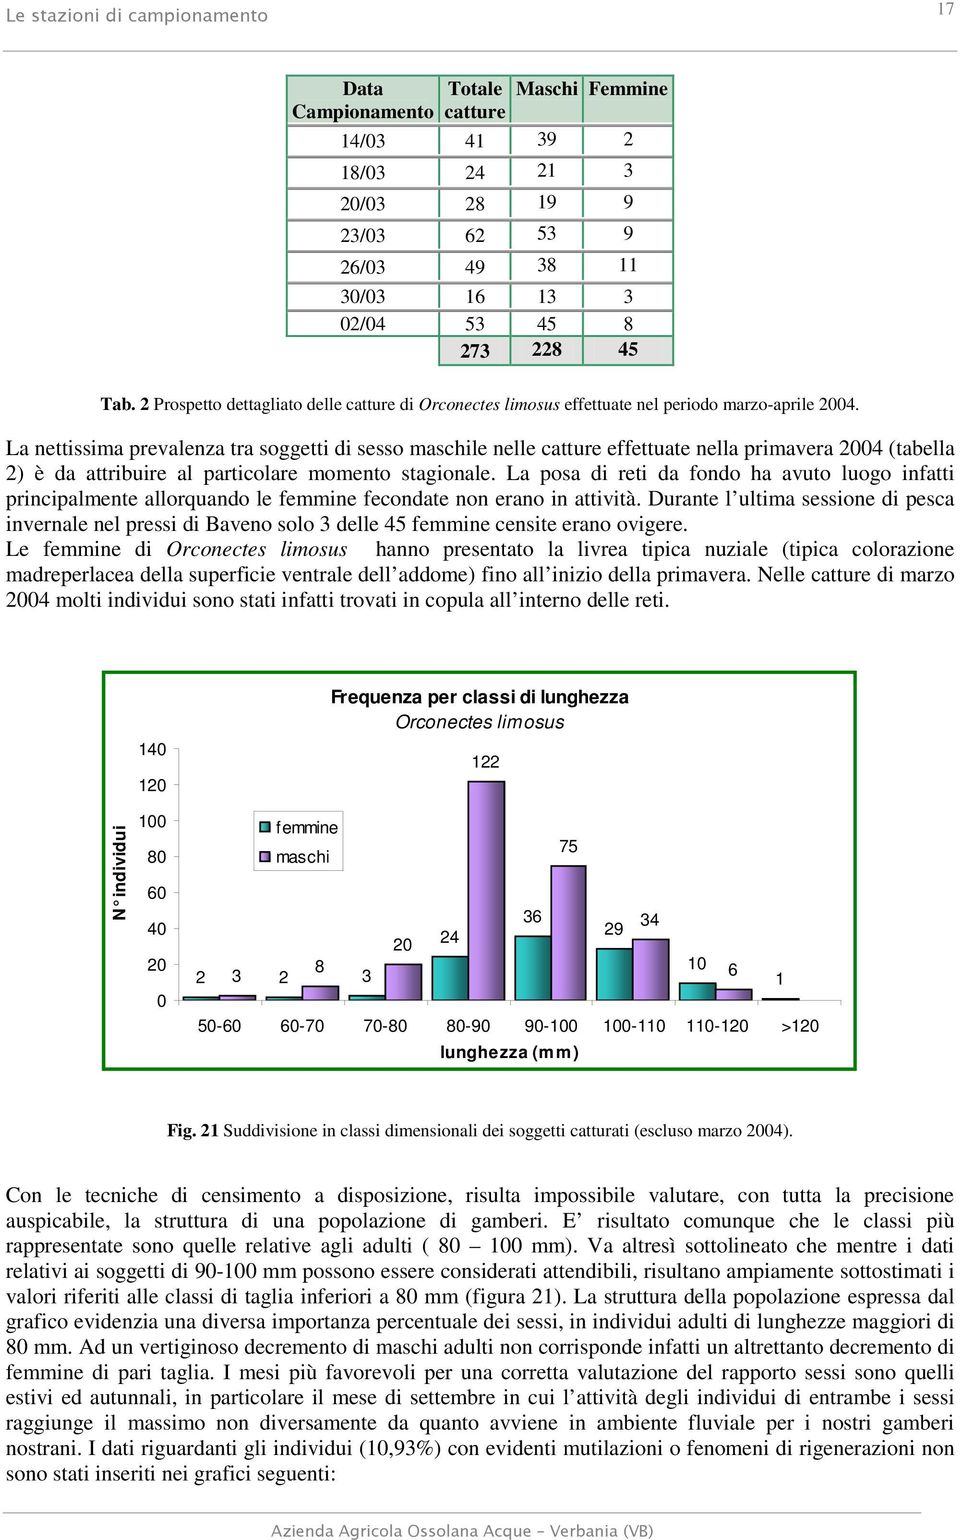 La nettissima prevalenza tra soggetti di sesso maschile nelle catture effettuate nella primavera 2004 (tabella 2) è da attribuire al particolare momento stagionale.